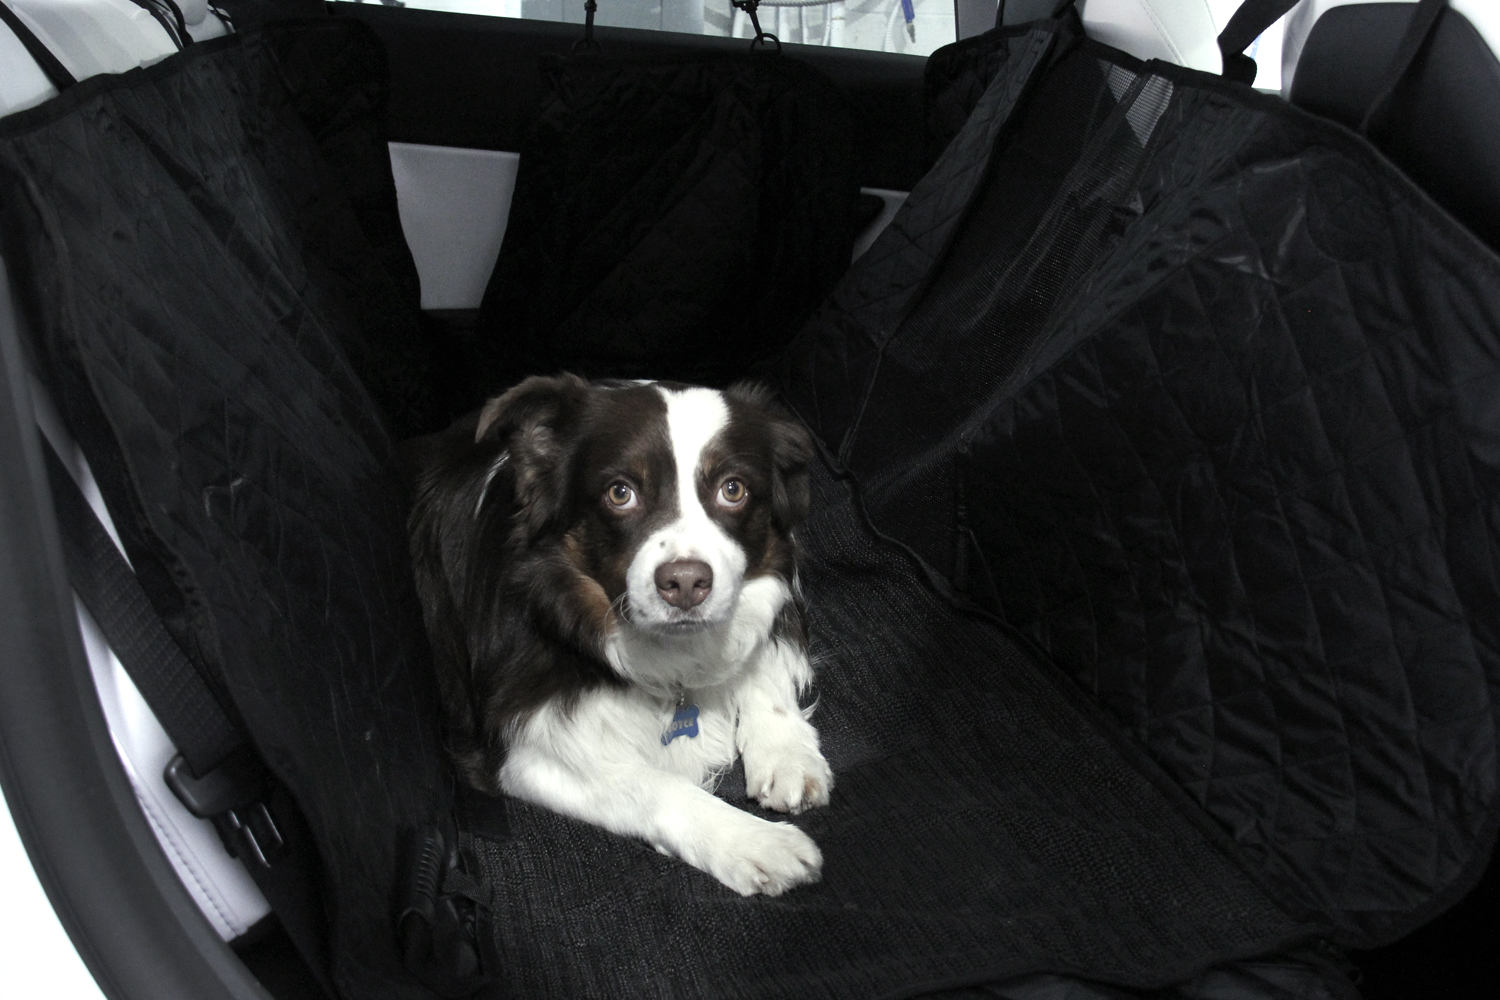 Model 3 Backseat Protector / Pet cover. By Tesland - Tesland